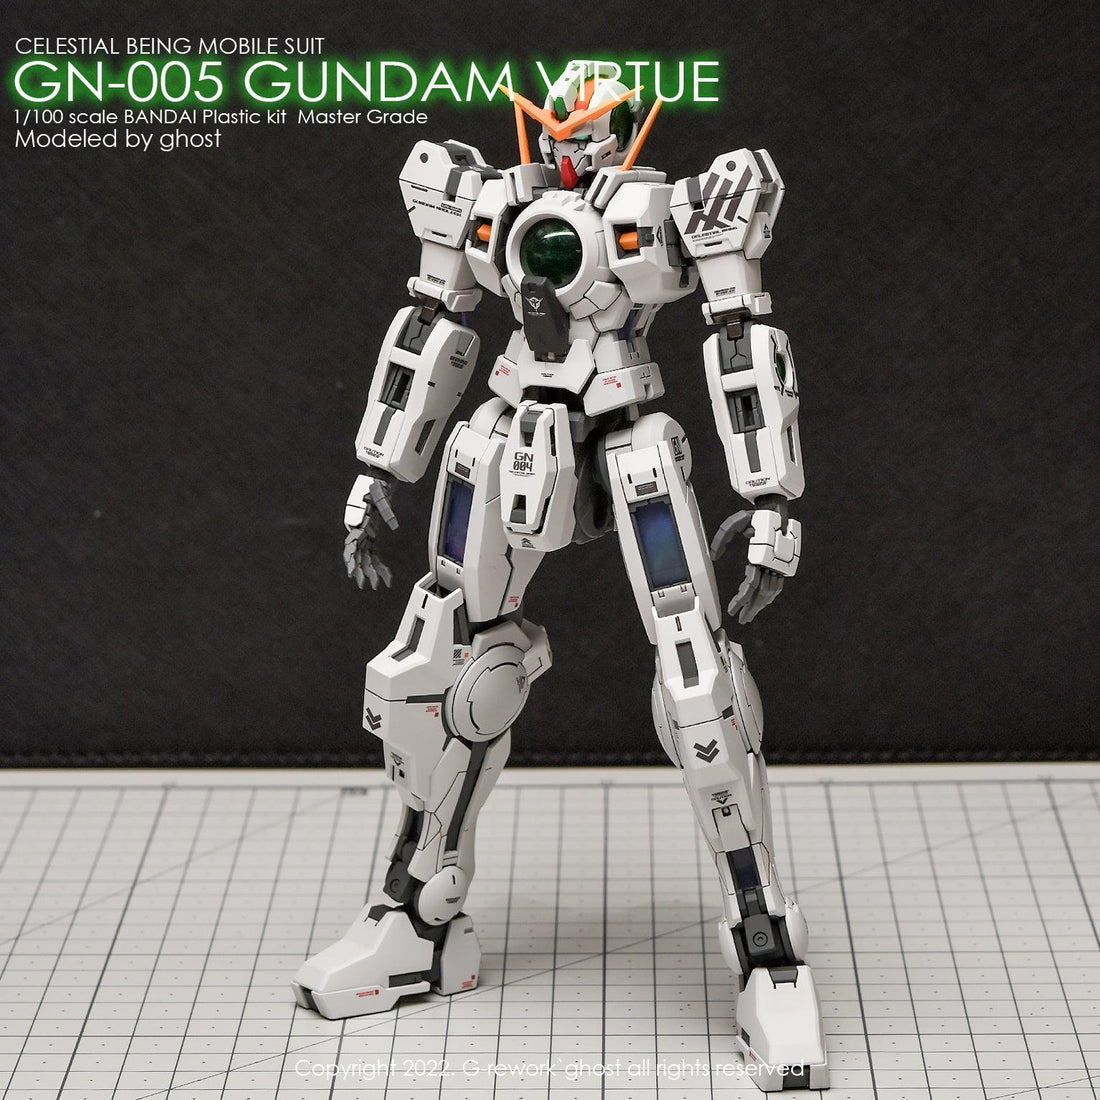 G-Rework[MG] VIRTUE - Gundam Extra-Your BEST Gunpla Supplier